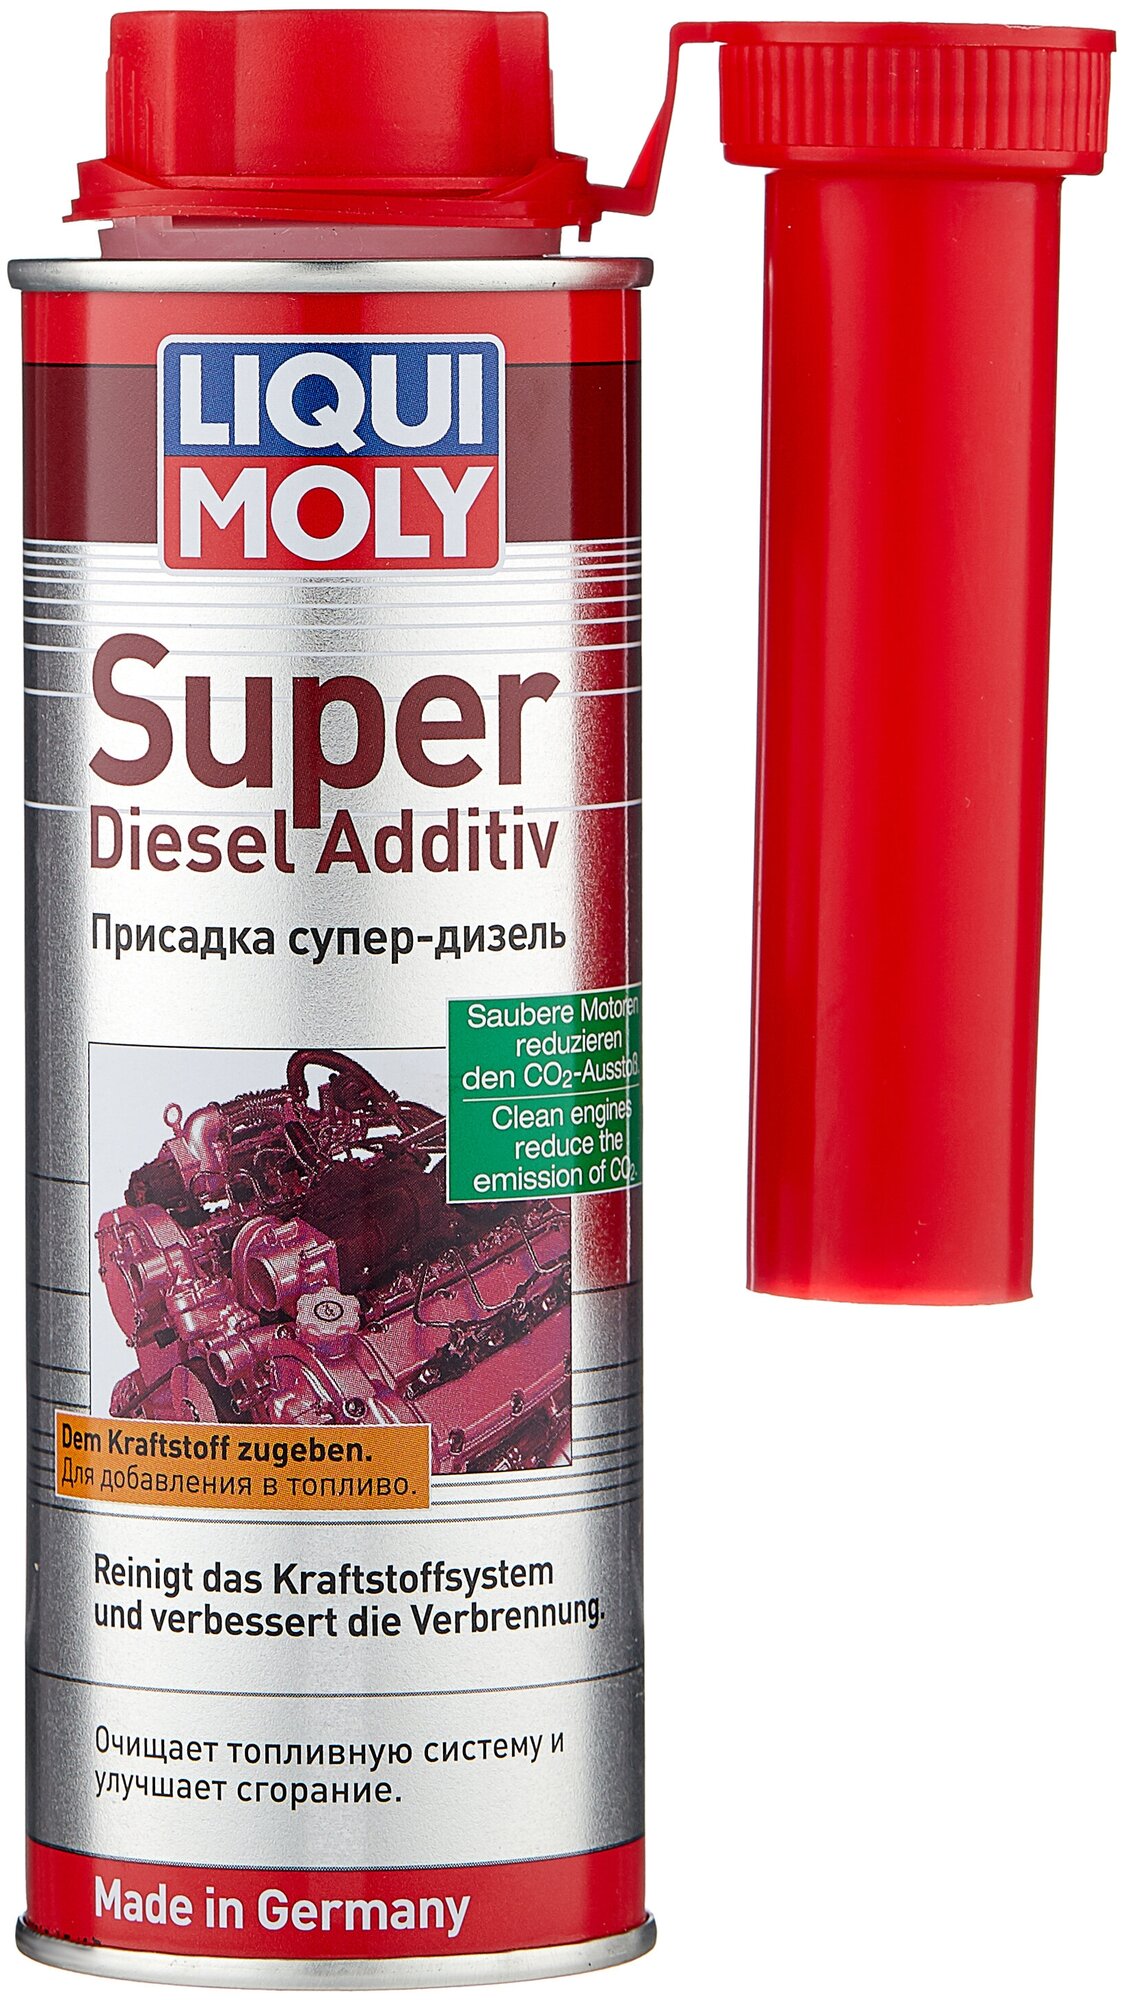 LIQUI MOLY Super Diesel Additiv, 0.25 л — купить в интернет-магазине по  низкой цене на Яндекс Маркете